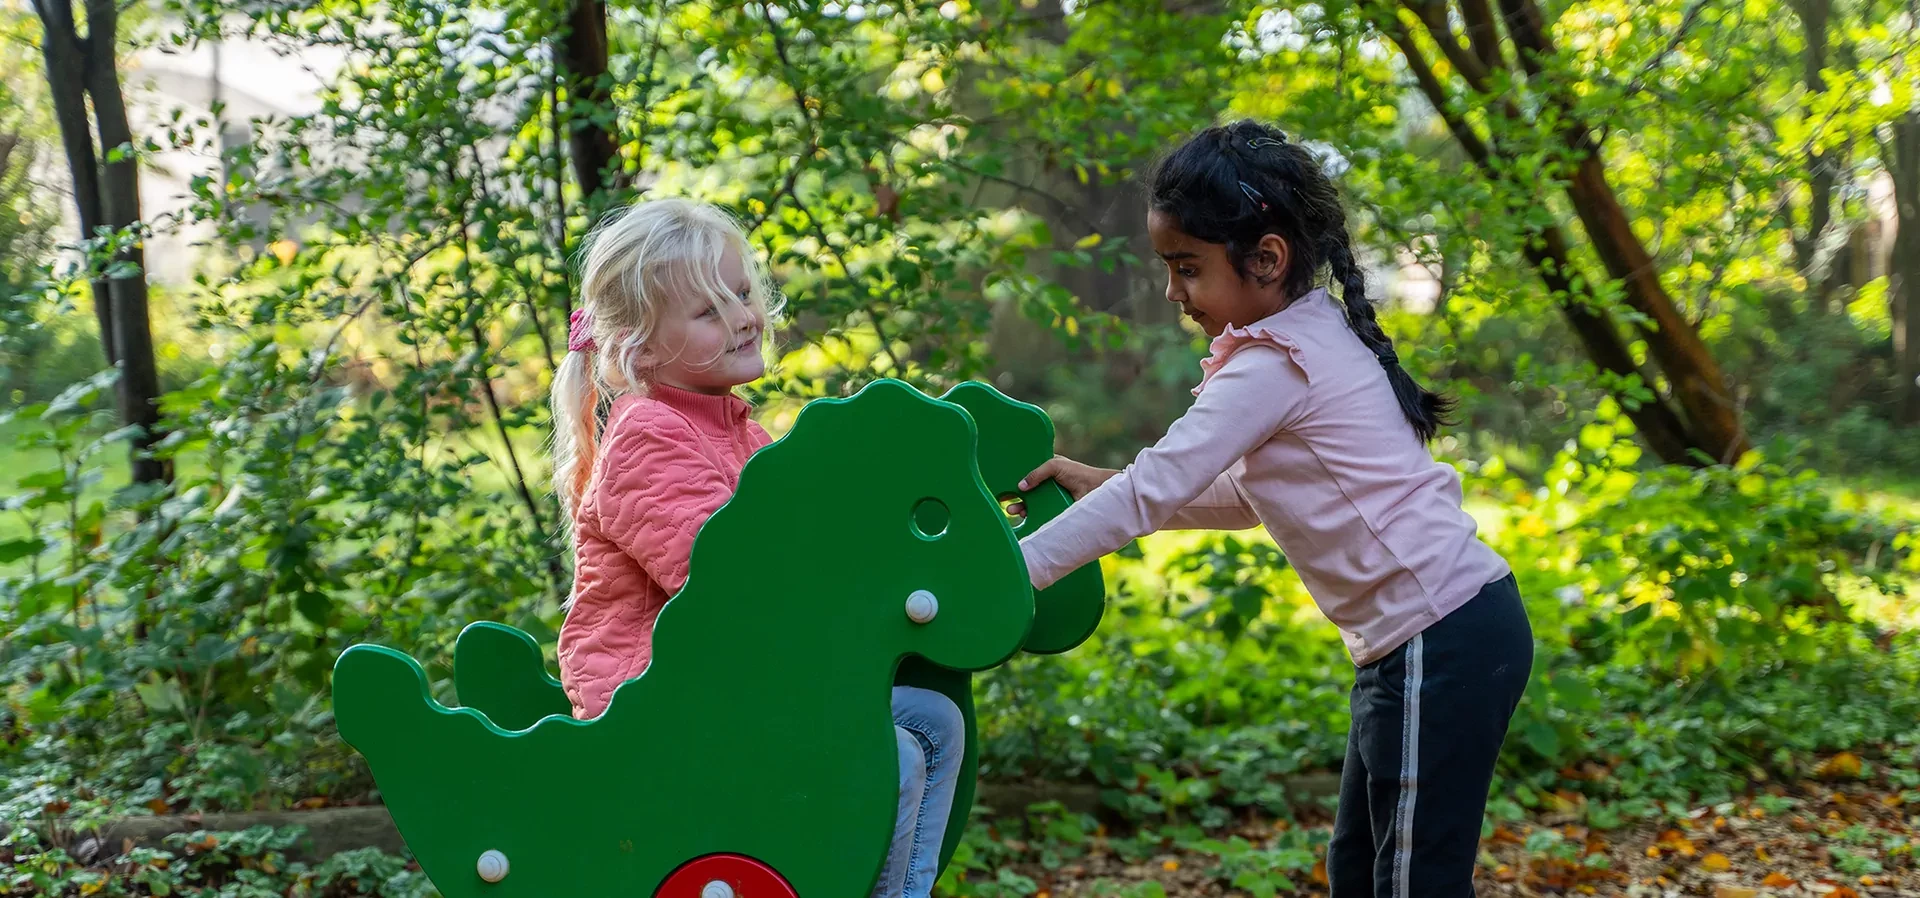 tytöt leikkimässä dinosauruksen muotoisella jousikeinulla leikkipuistossa pääkuva